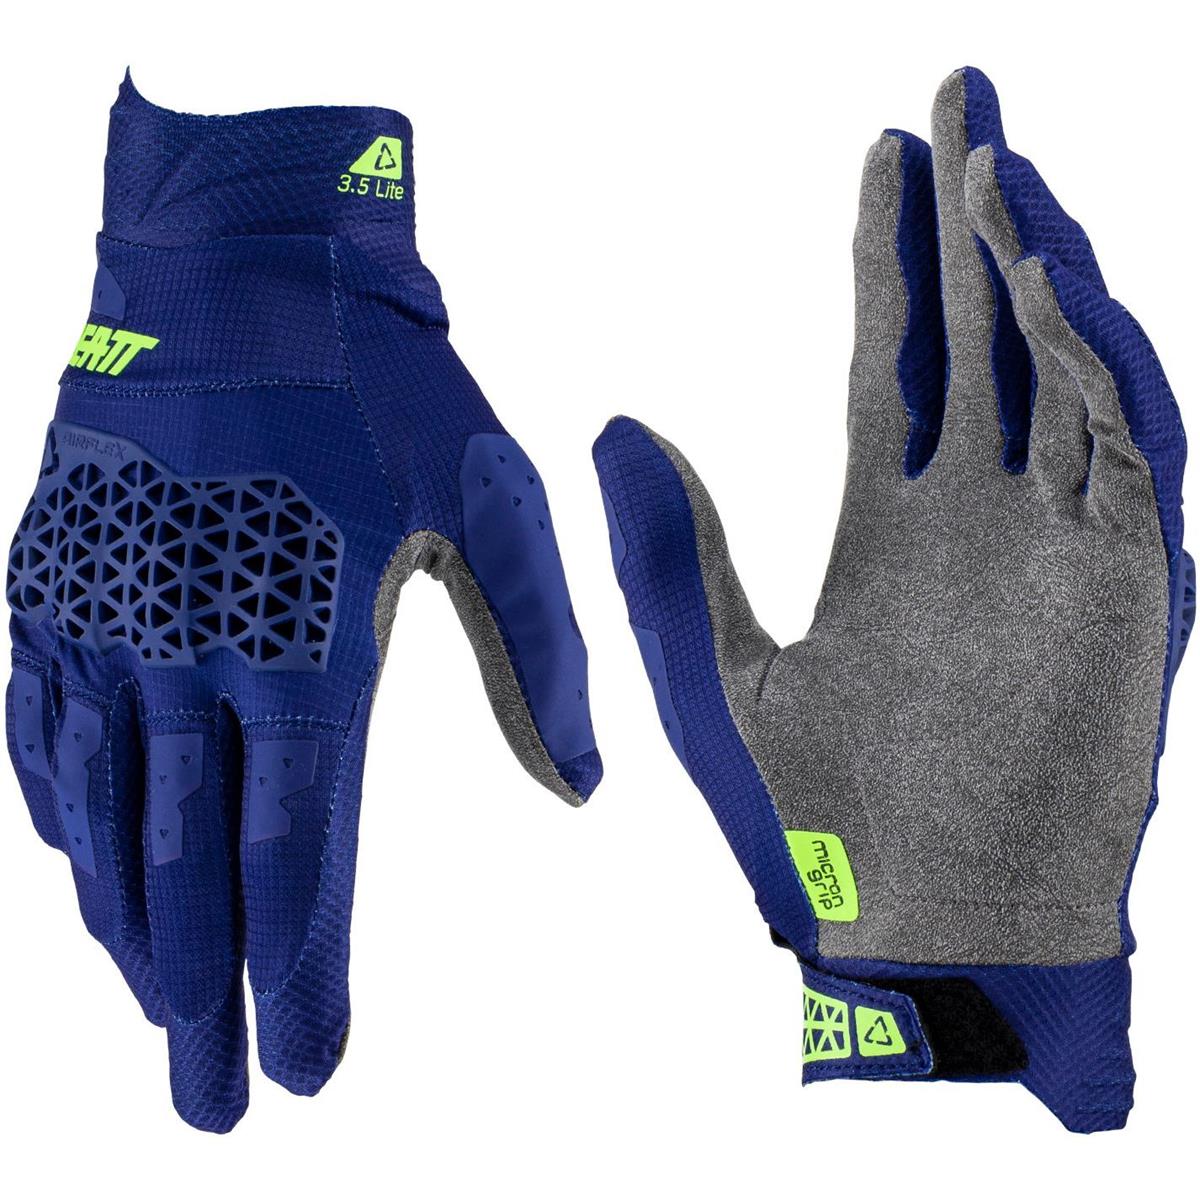 Leatt Handschuhe Moto 3.5 Lite V23 Blau